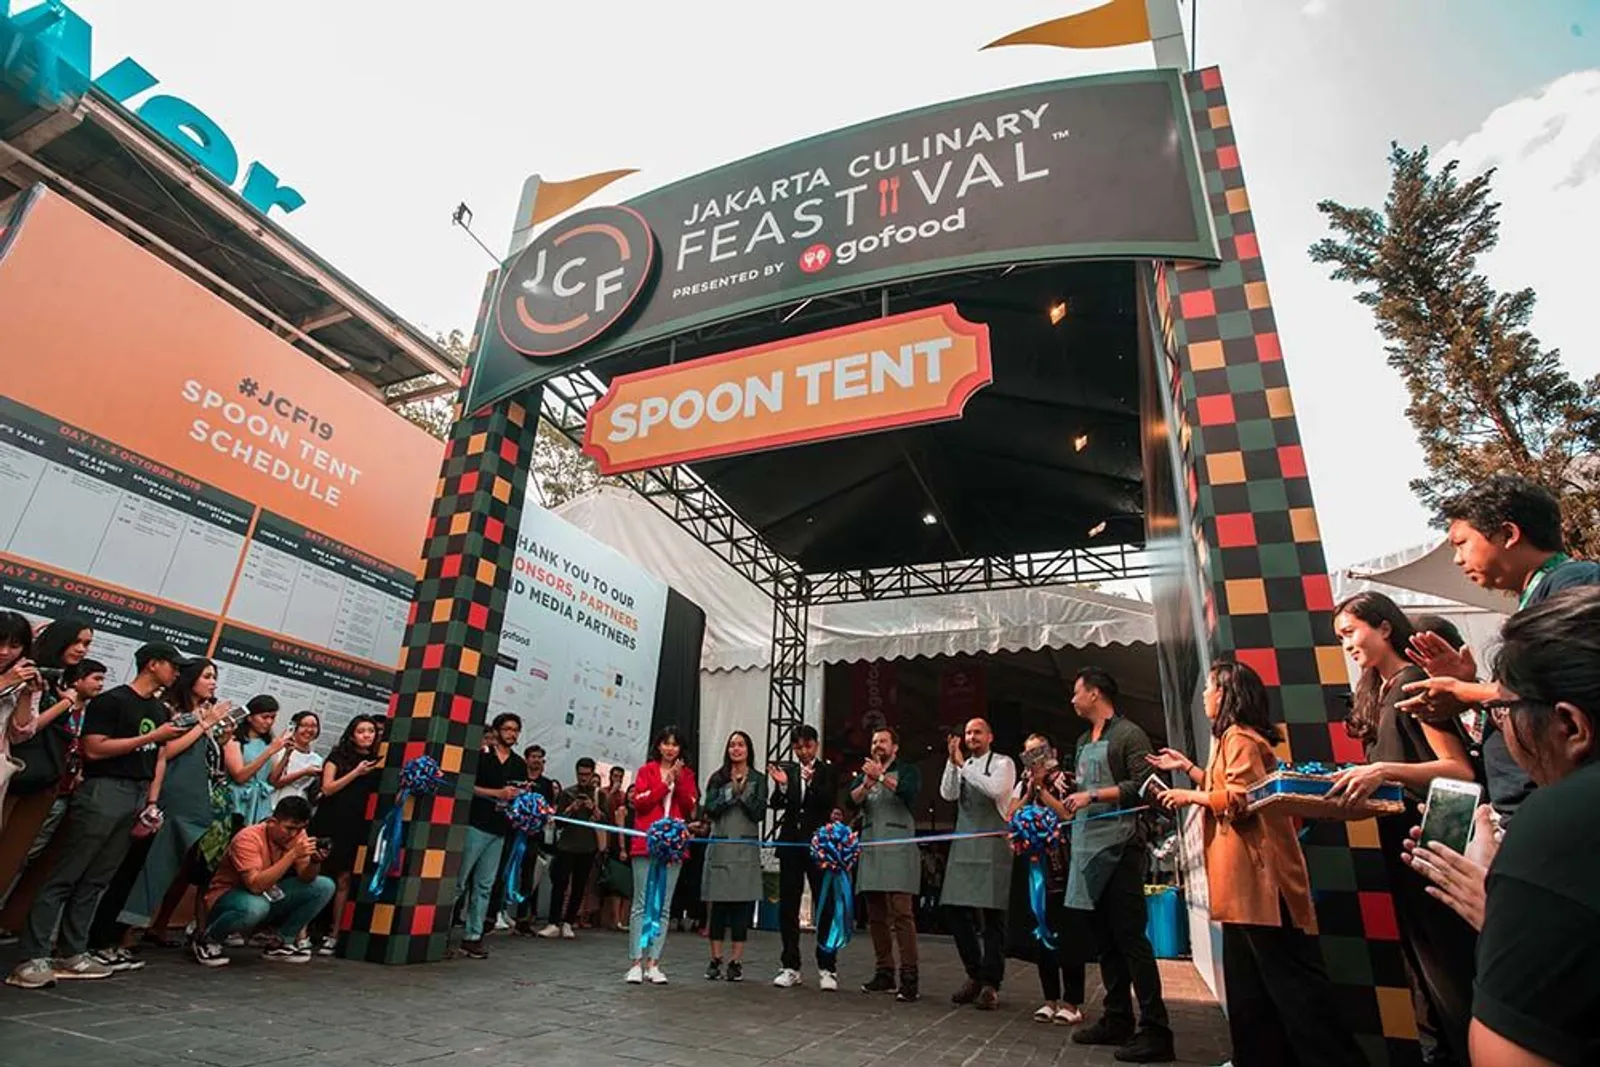 Jakarta Culinary Feastival 2019 Sediakan Dua Tenda Besar untuk Foodies